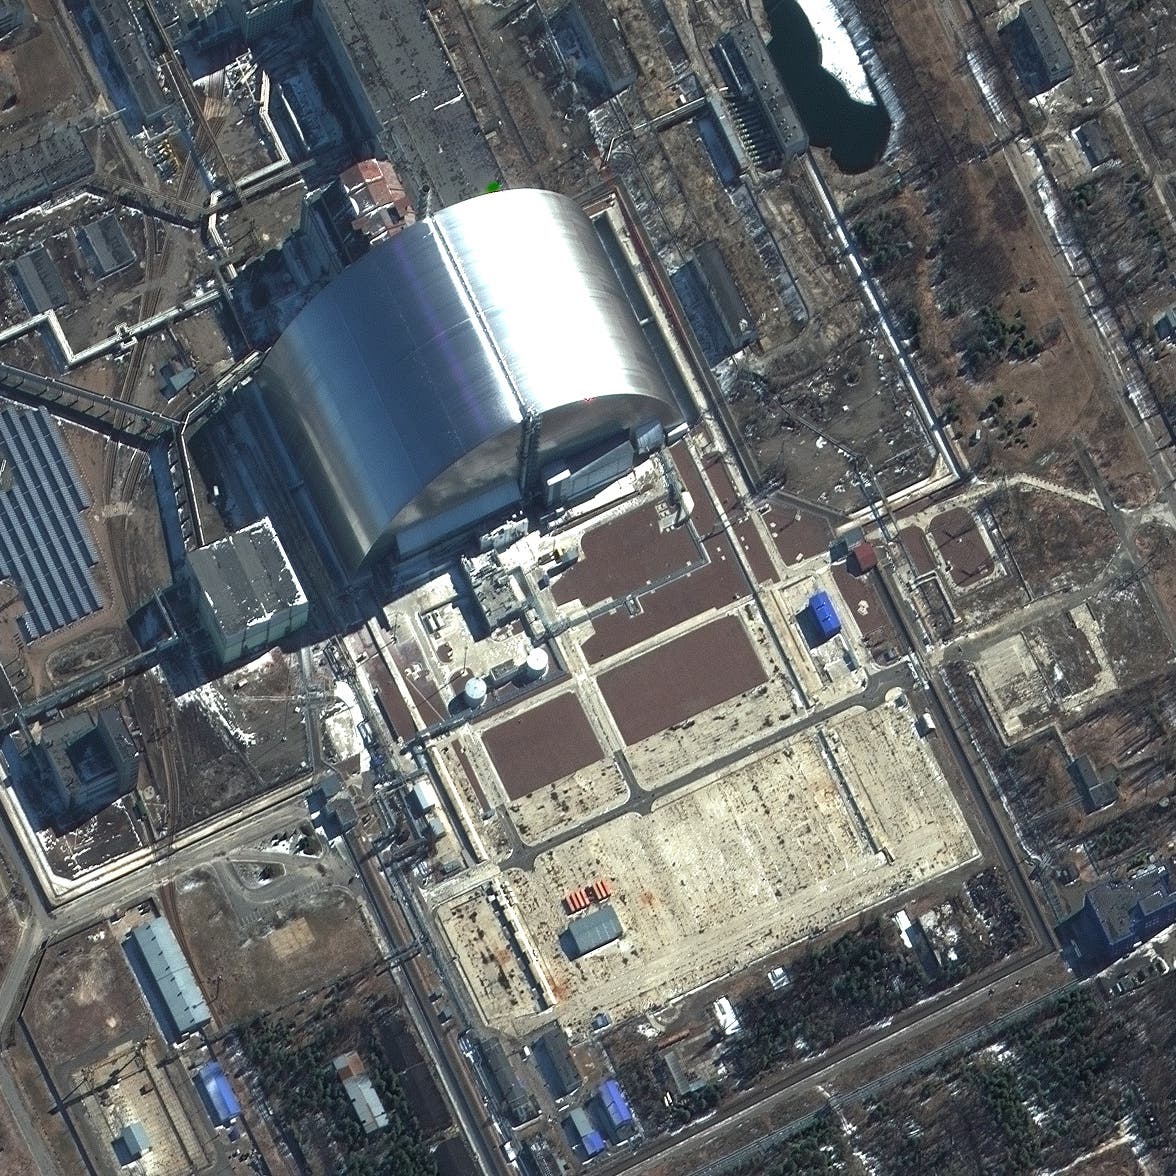 كييف: روس سرقوا من تشيرنوبل مواد إشعاعية قد تفتك بهم